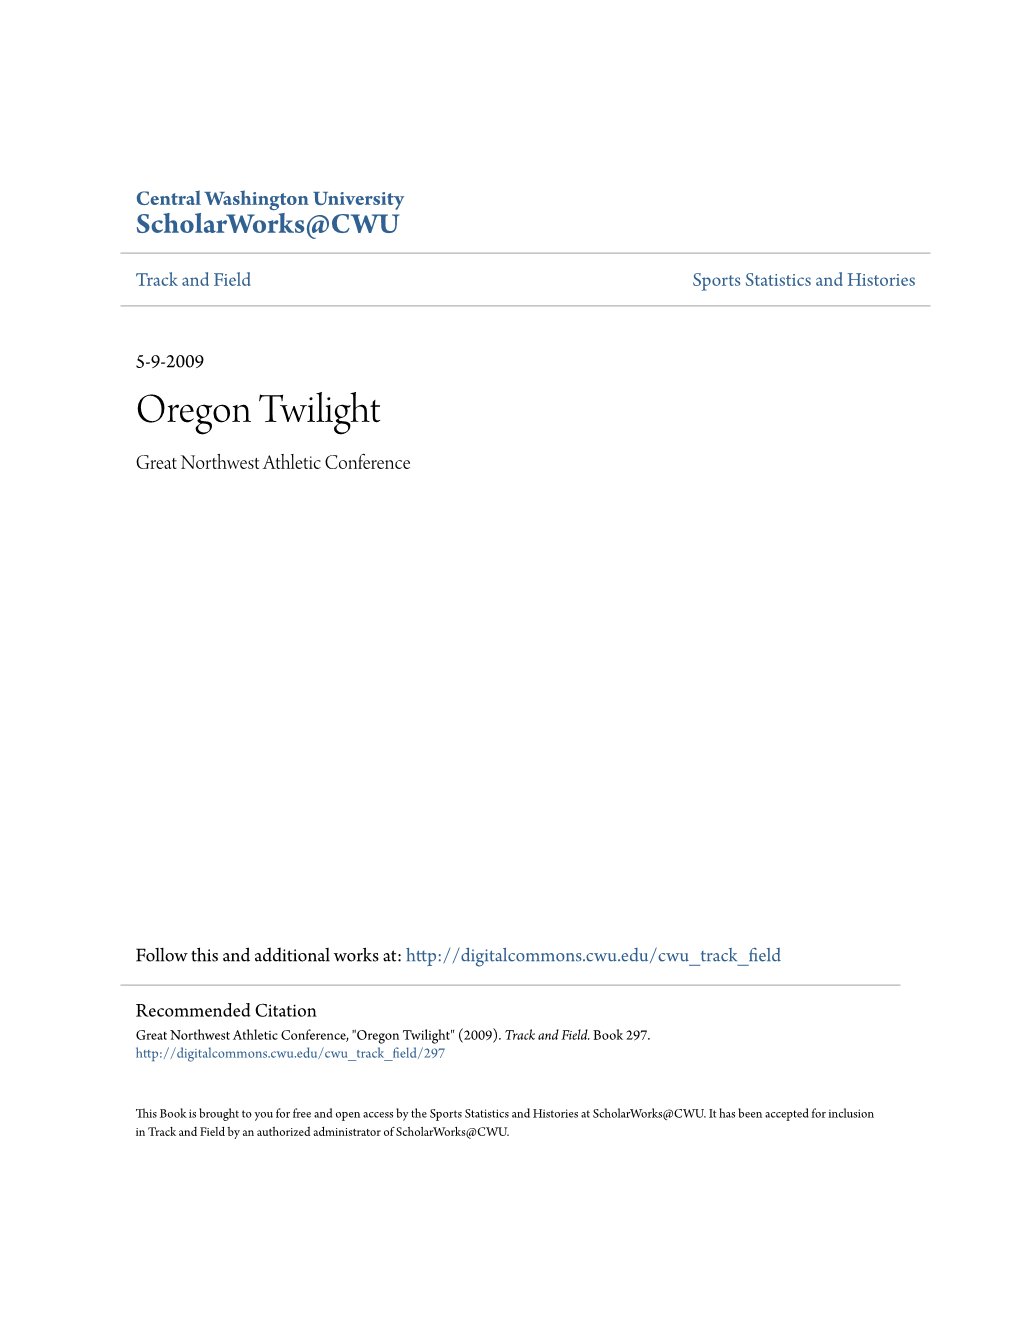 Oregon Twilight Great Northwest Athletic Conference